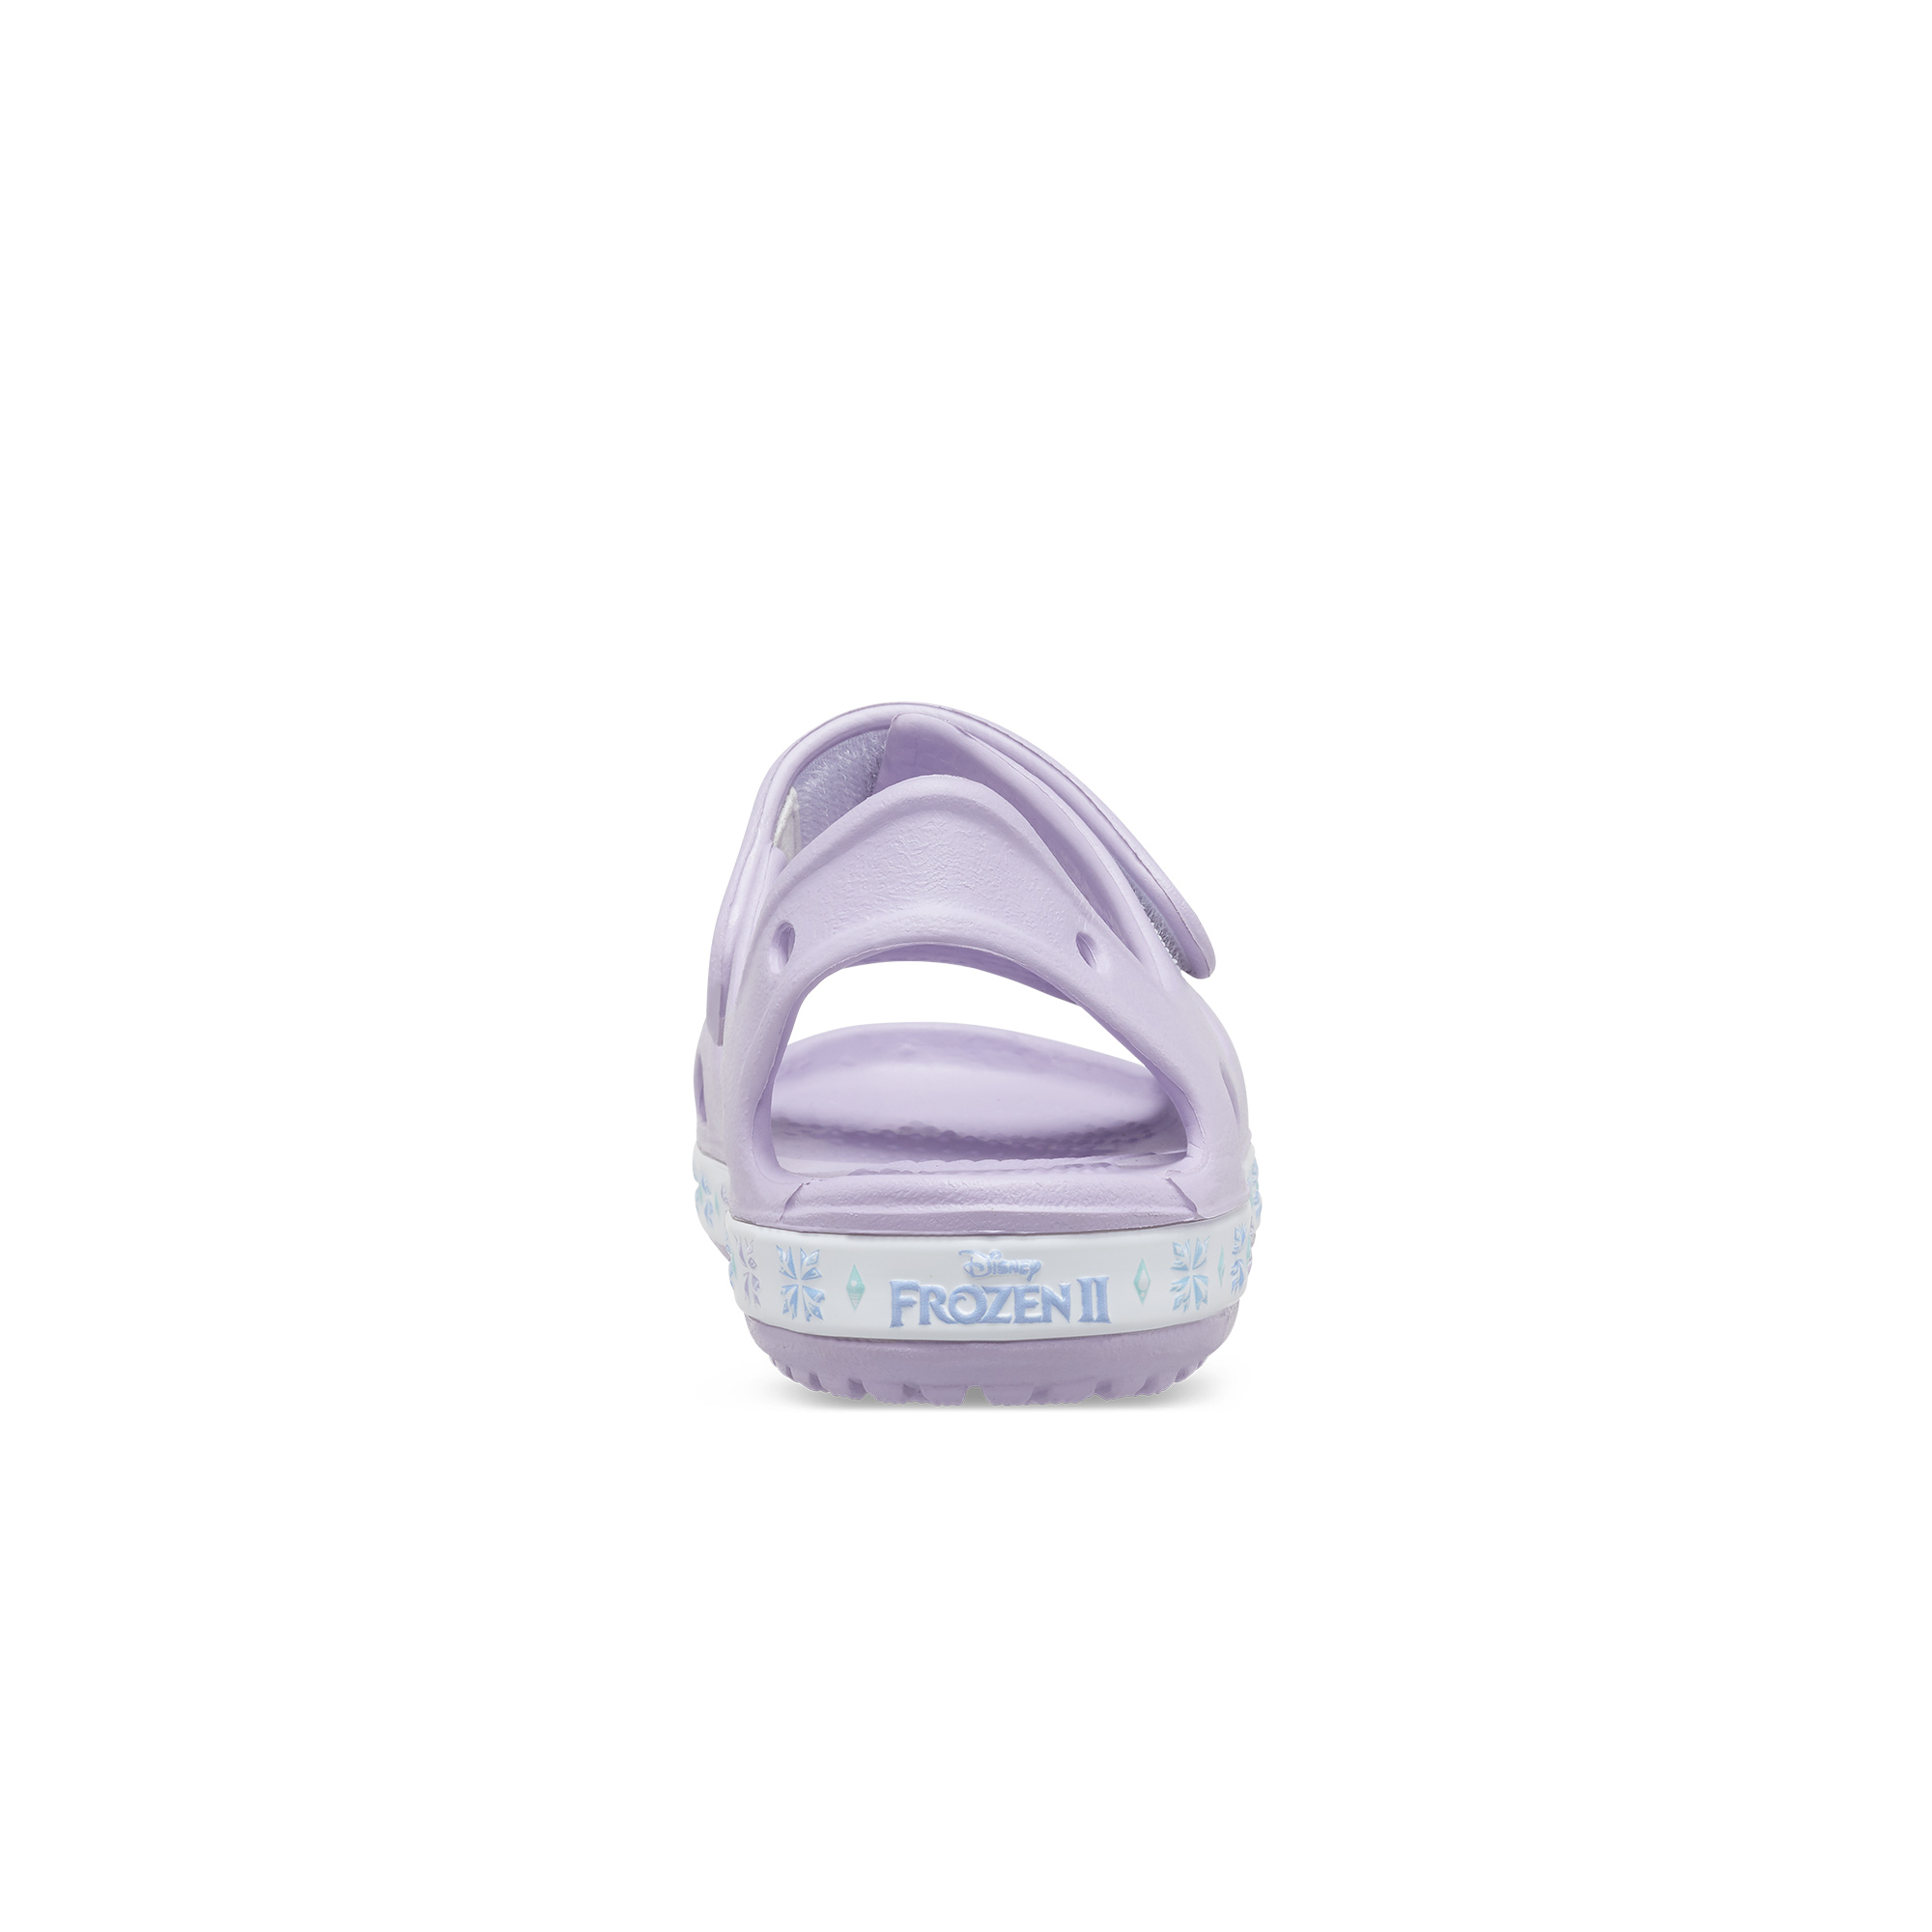 Giày sandal trẻ em Crocs Funlab Disney Frozen Ii Lavender - 206792 - 530